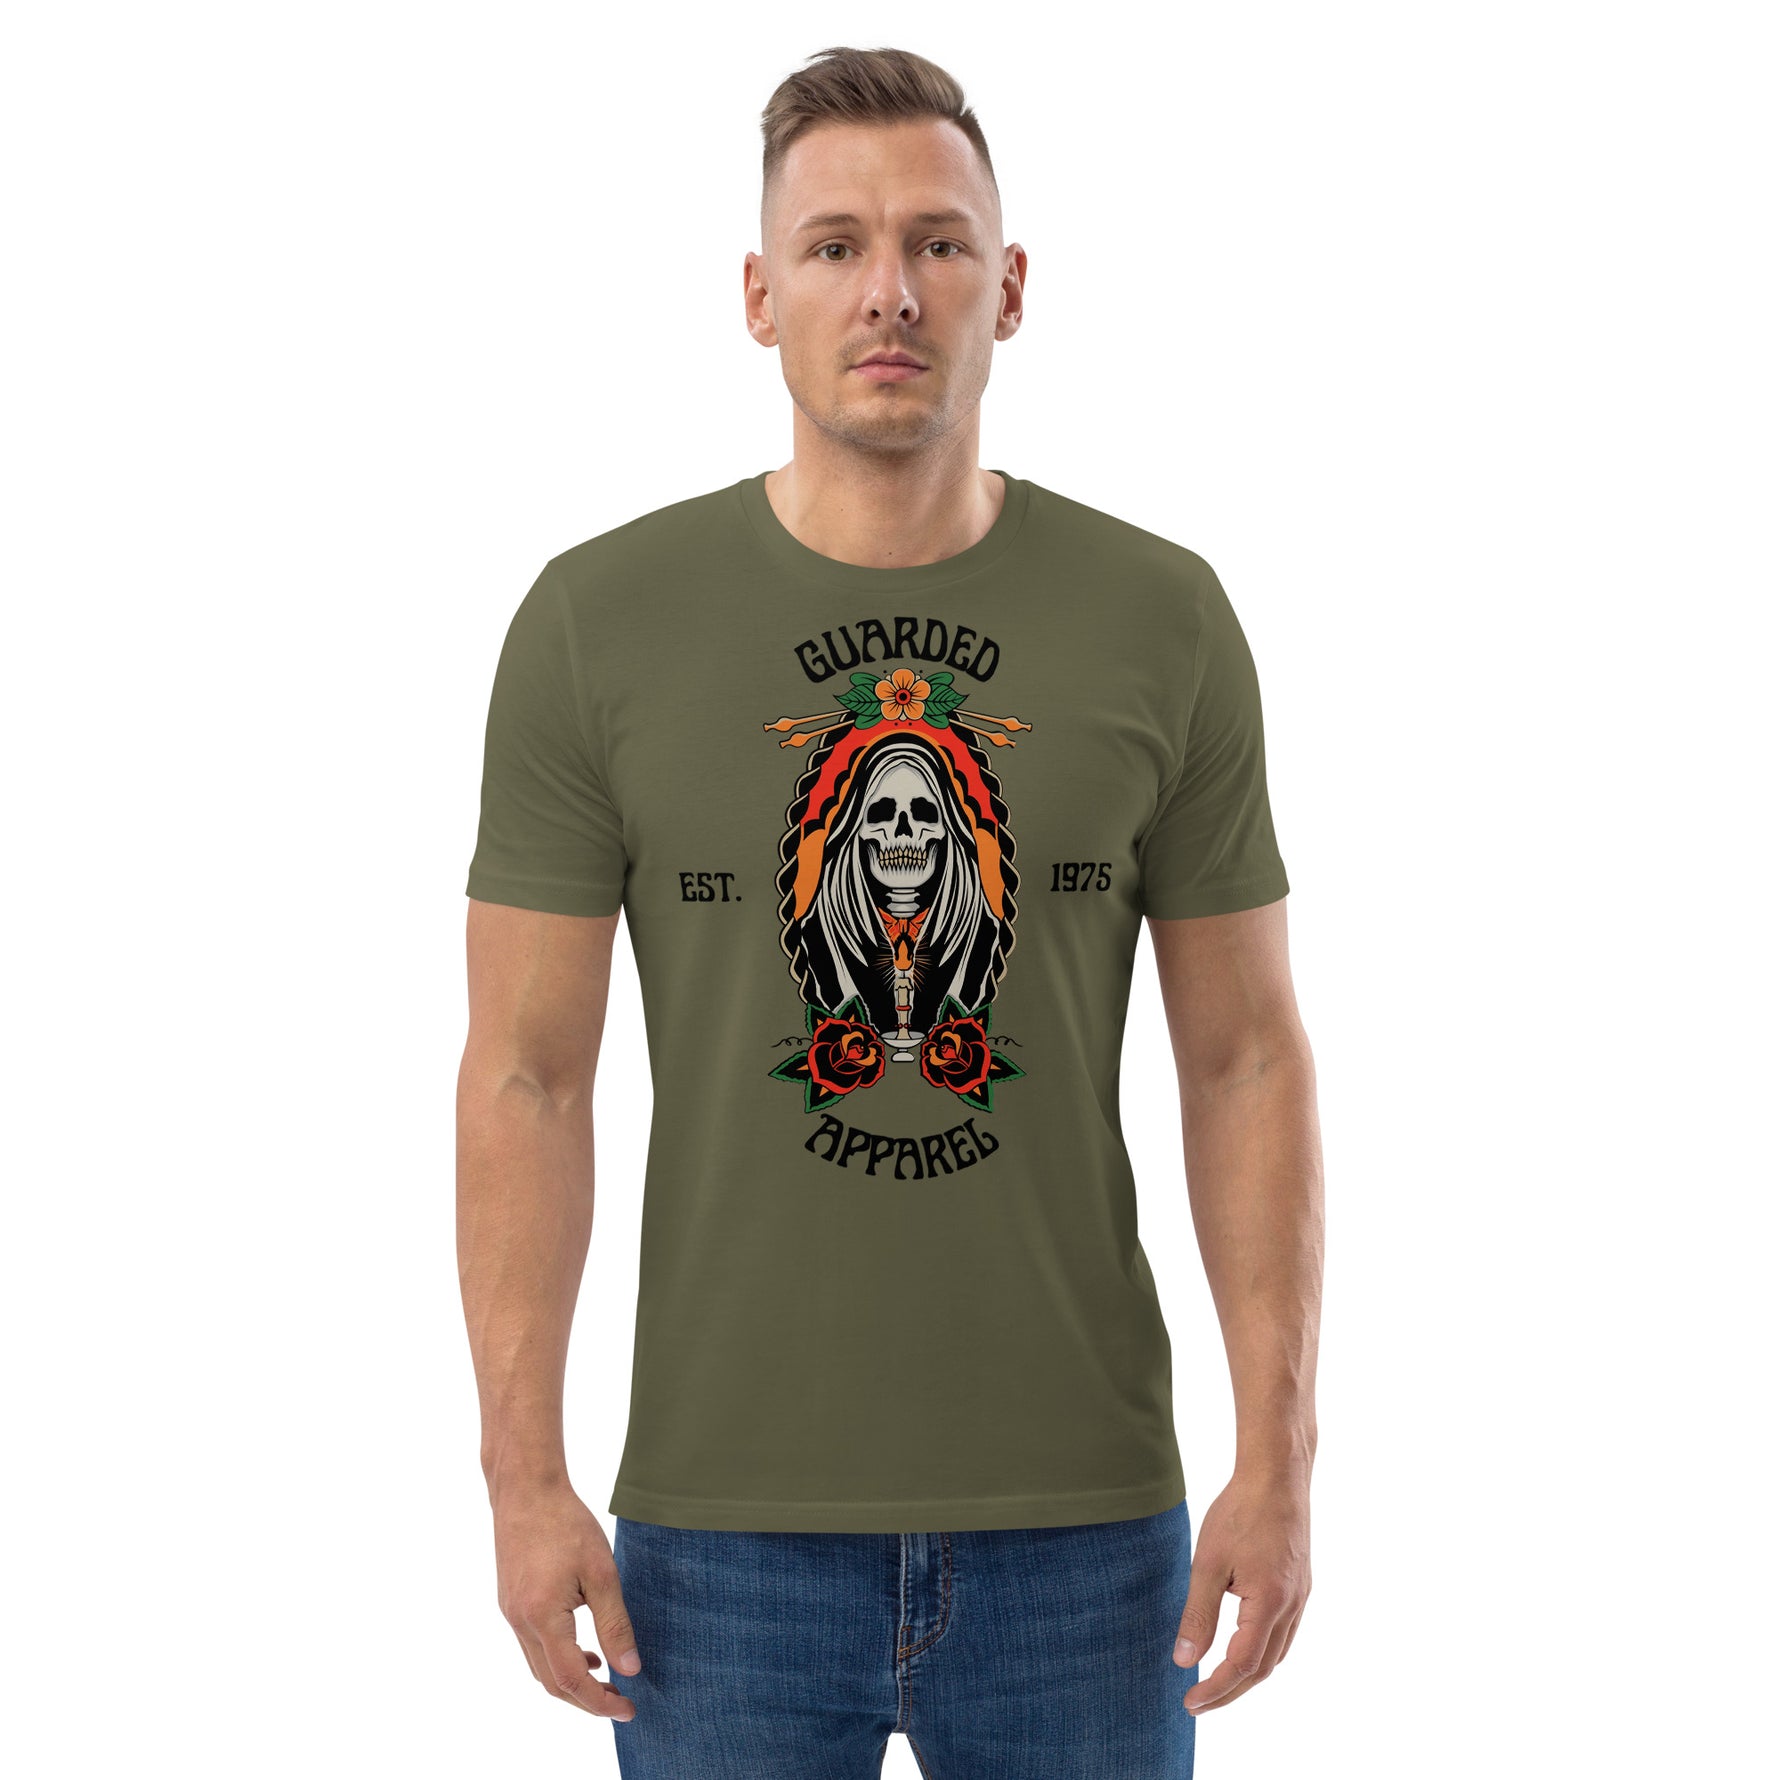 Mexican Reaper t-shirt